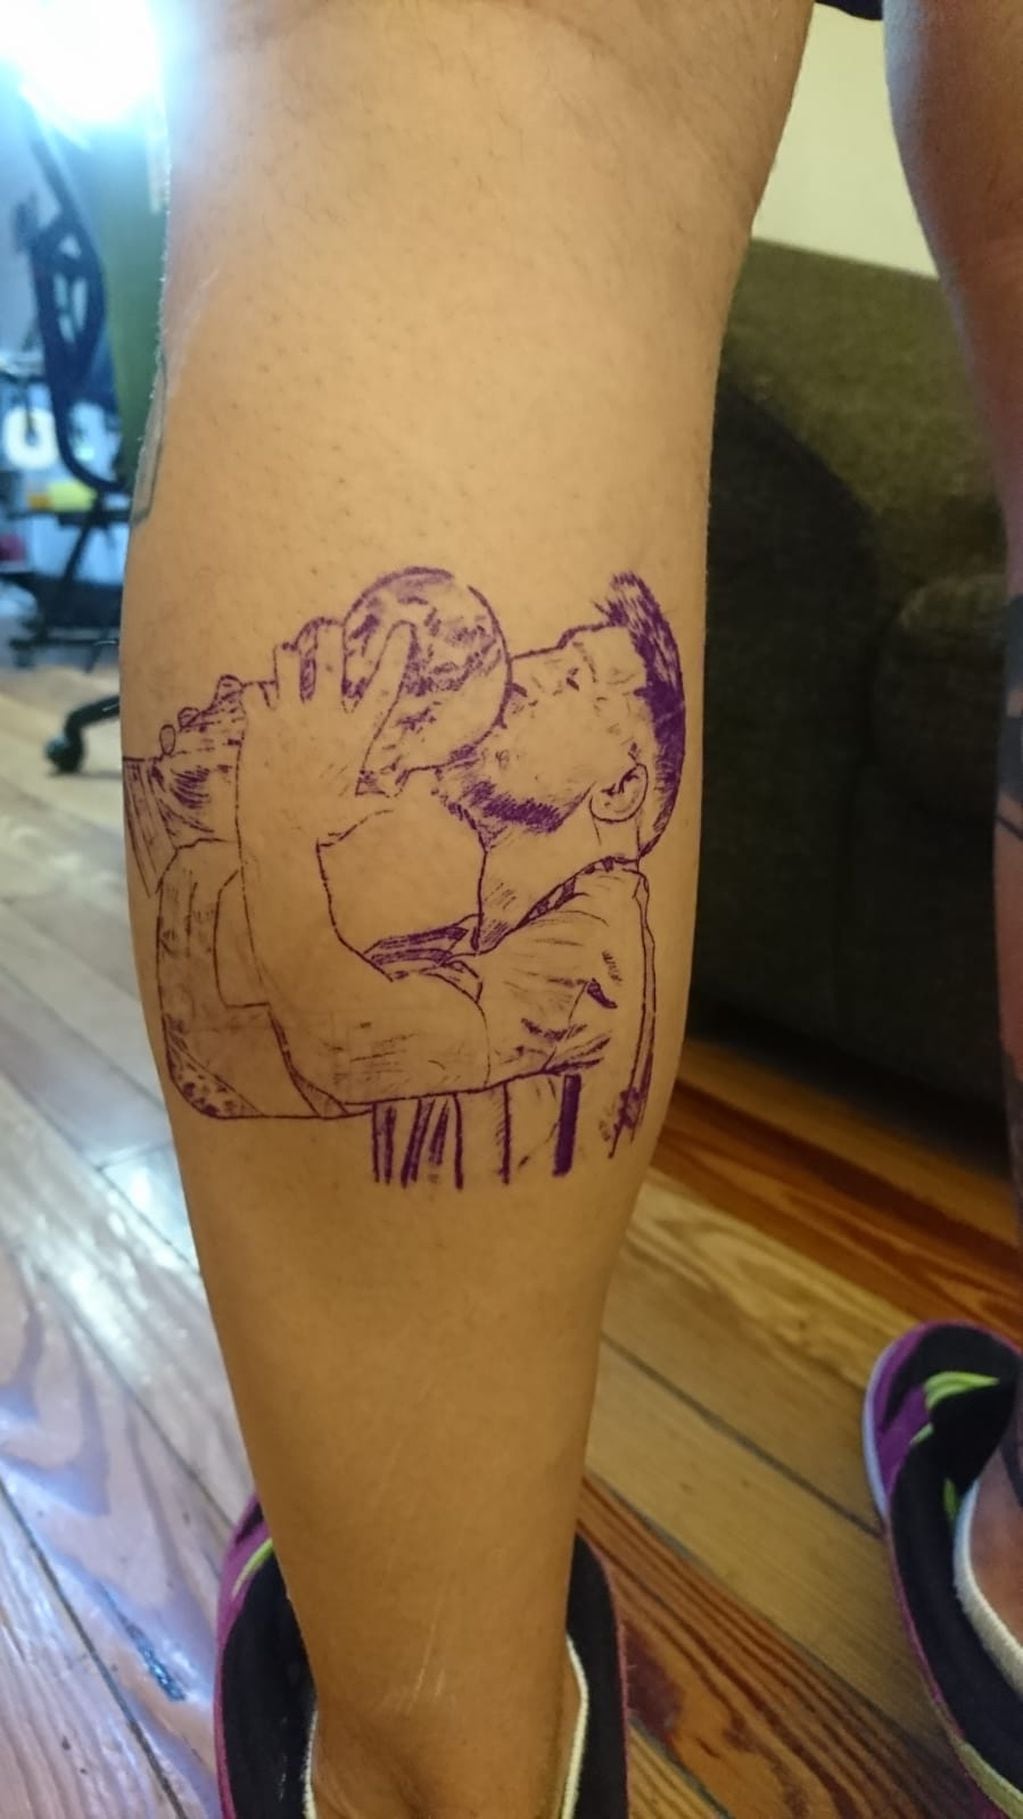 La Scaloneta en la piel: mendocinos inmortalizan la tercera copa en tatuajes, y algunos son impactantes. Foto: Emiliano Coria - Mendoza Tattoo